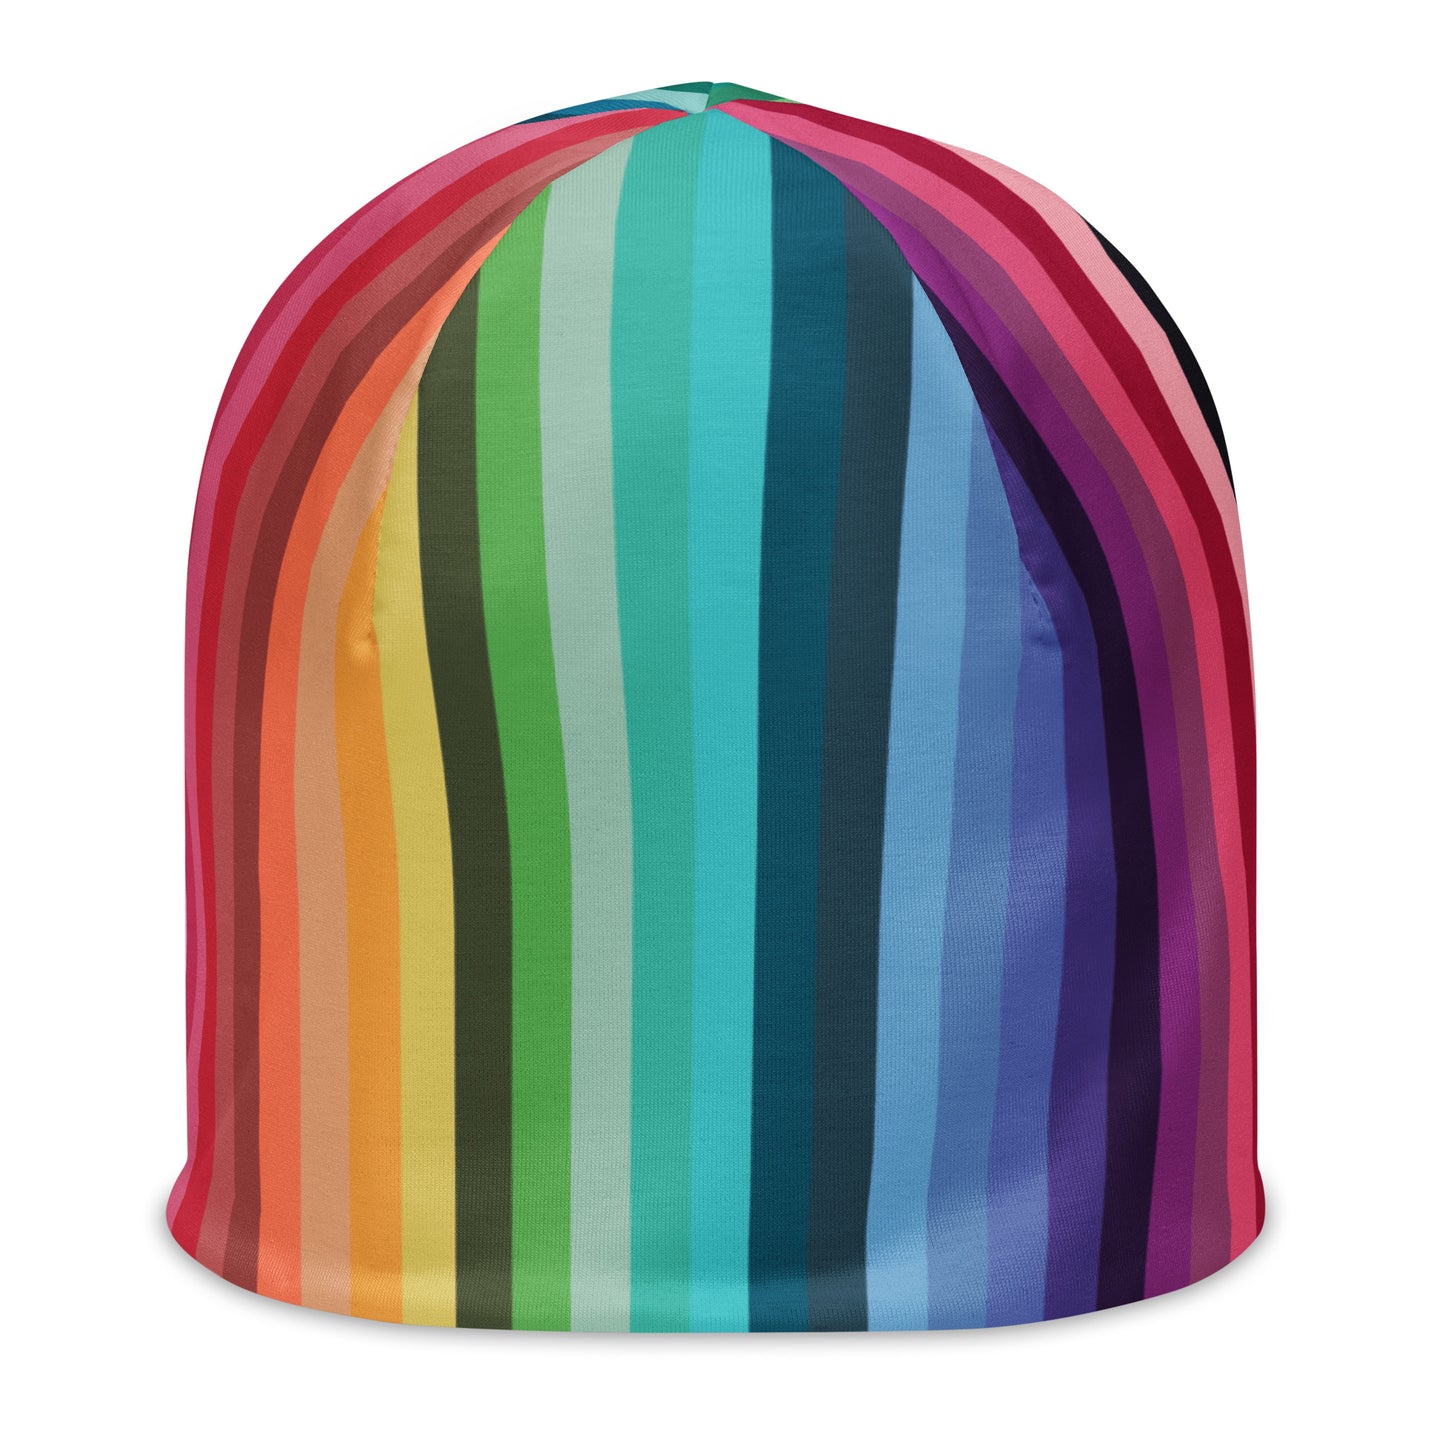 Rainbow Stripes All-Over Print Beanie